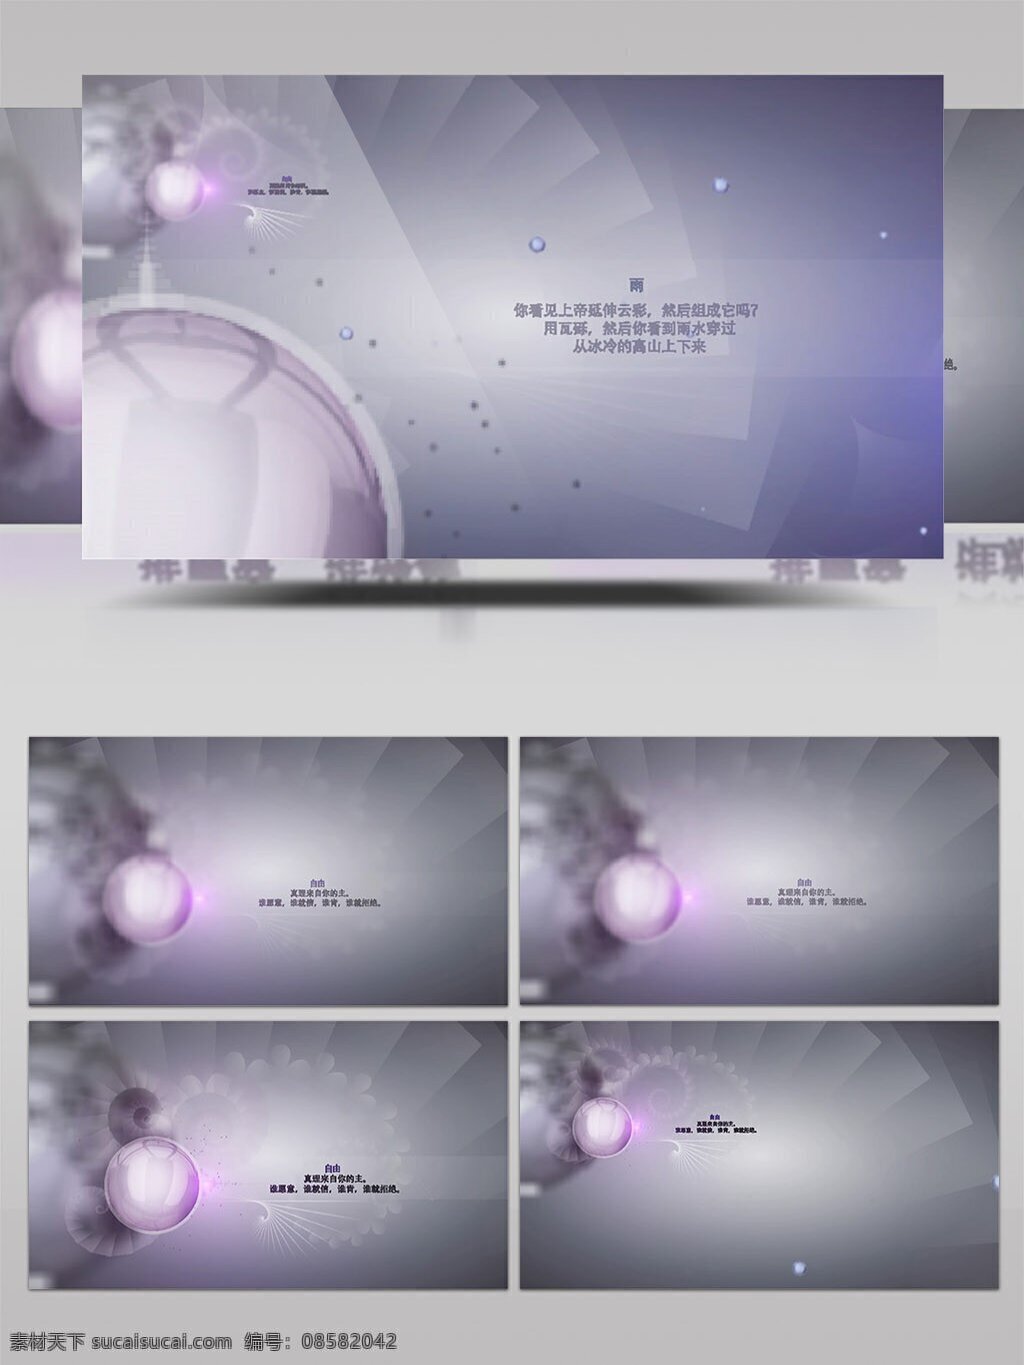 梦幻 朦胧 文字 标题 动画 展示 视频 模板 简约 名言 启示 优雅